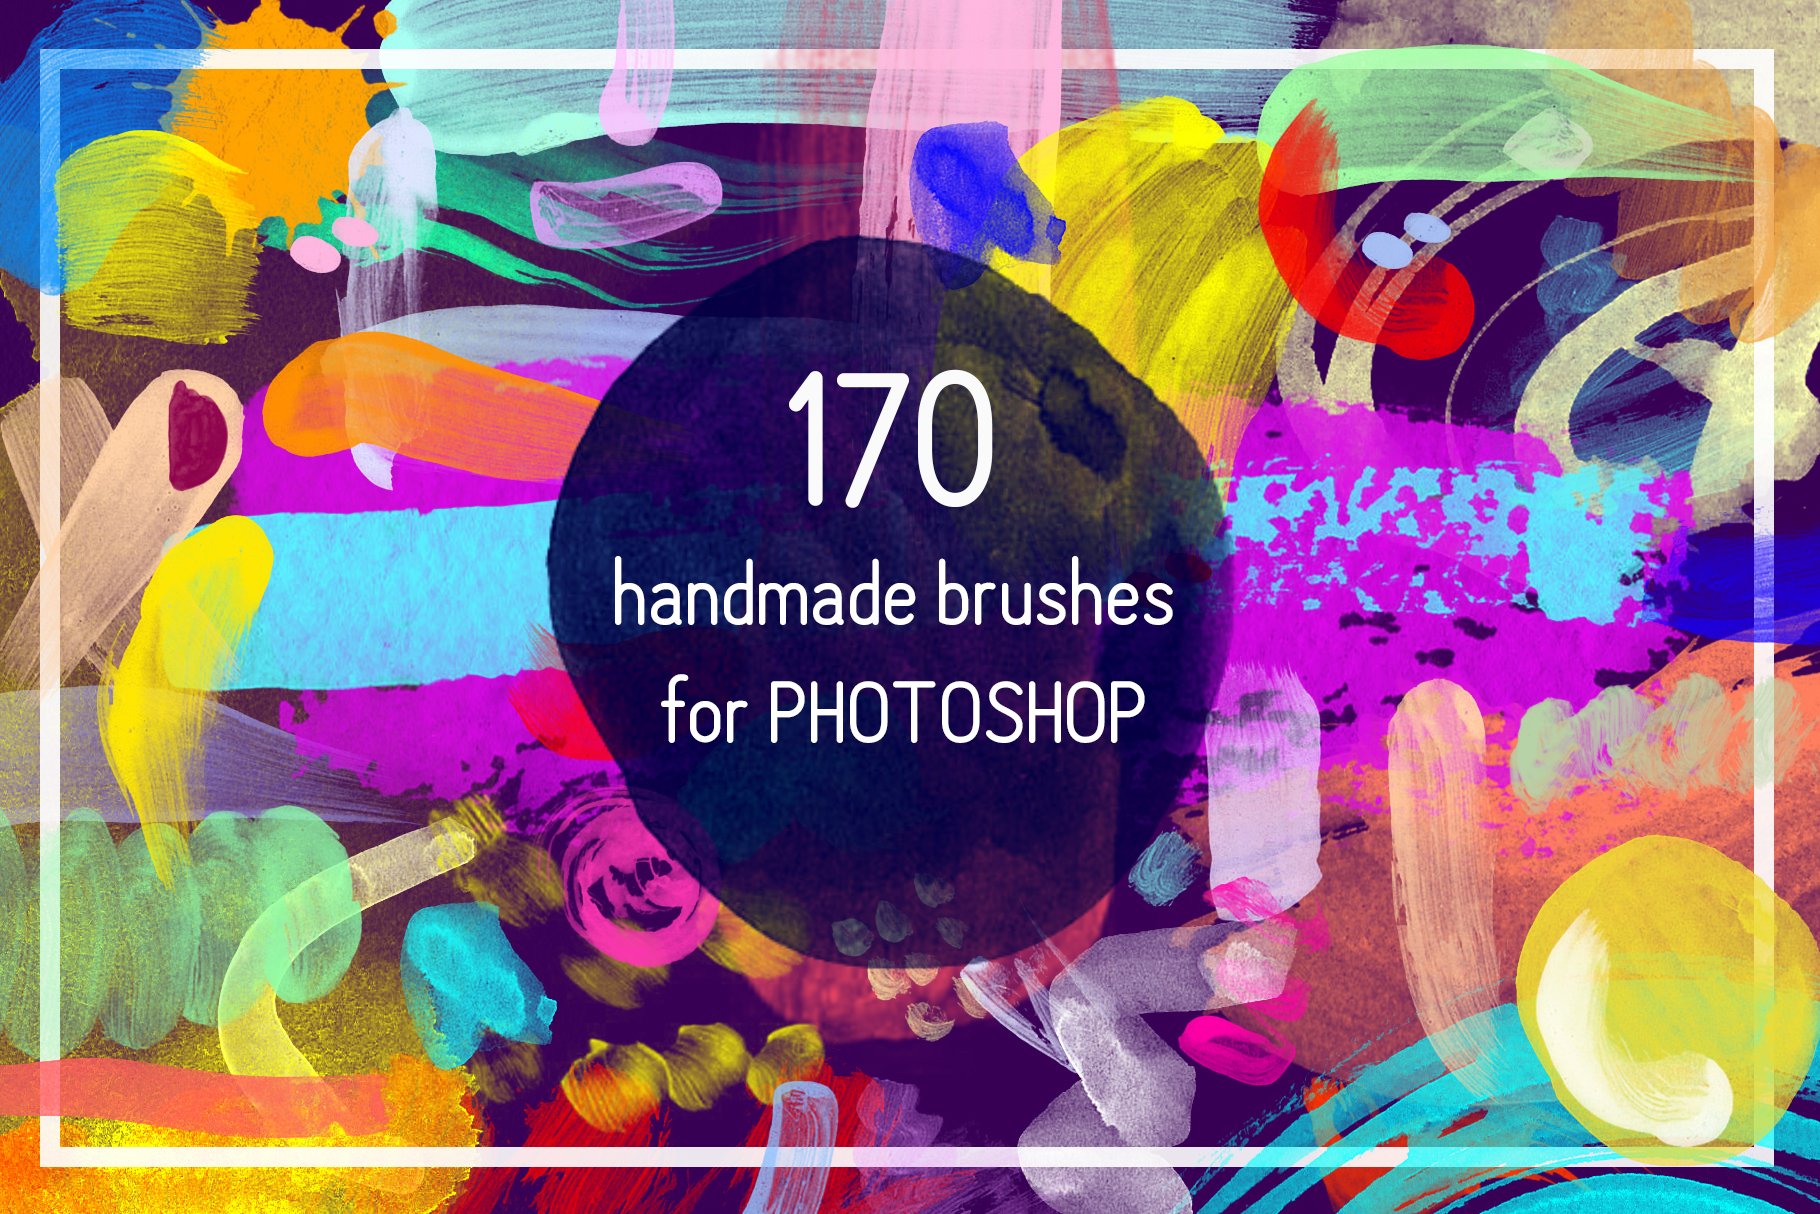 170 Handmade Brushes For Photoshopcover image.